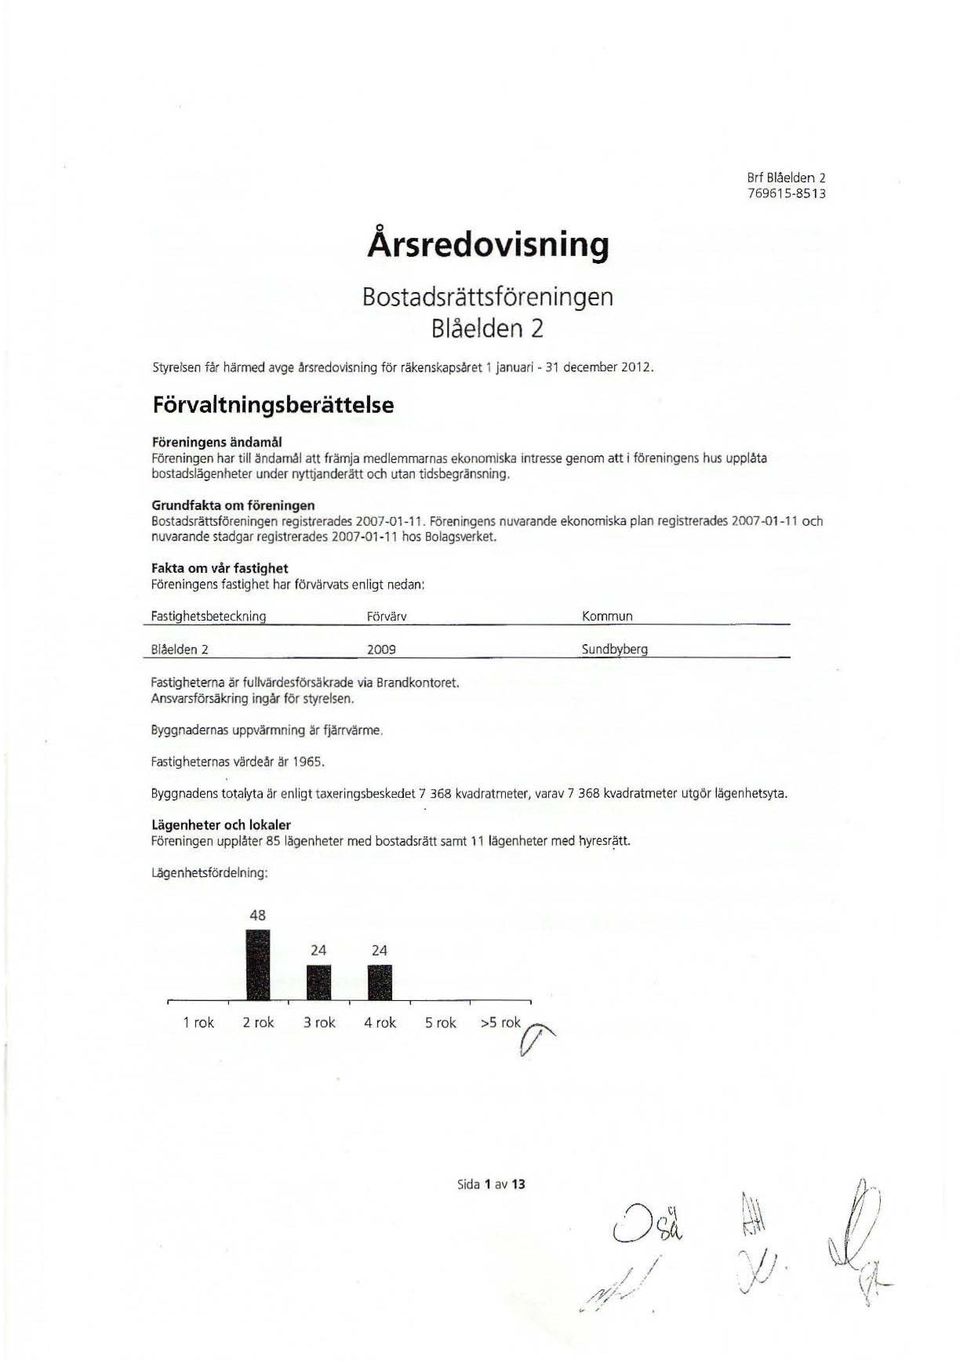 tidsbegränsning. Grundfakta m föreningen Bstadsrättsföreningen registrerades 2007-01 -11.